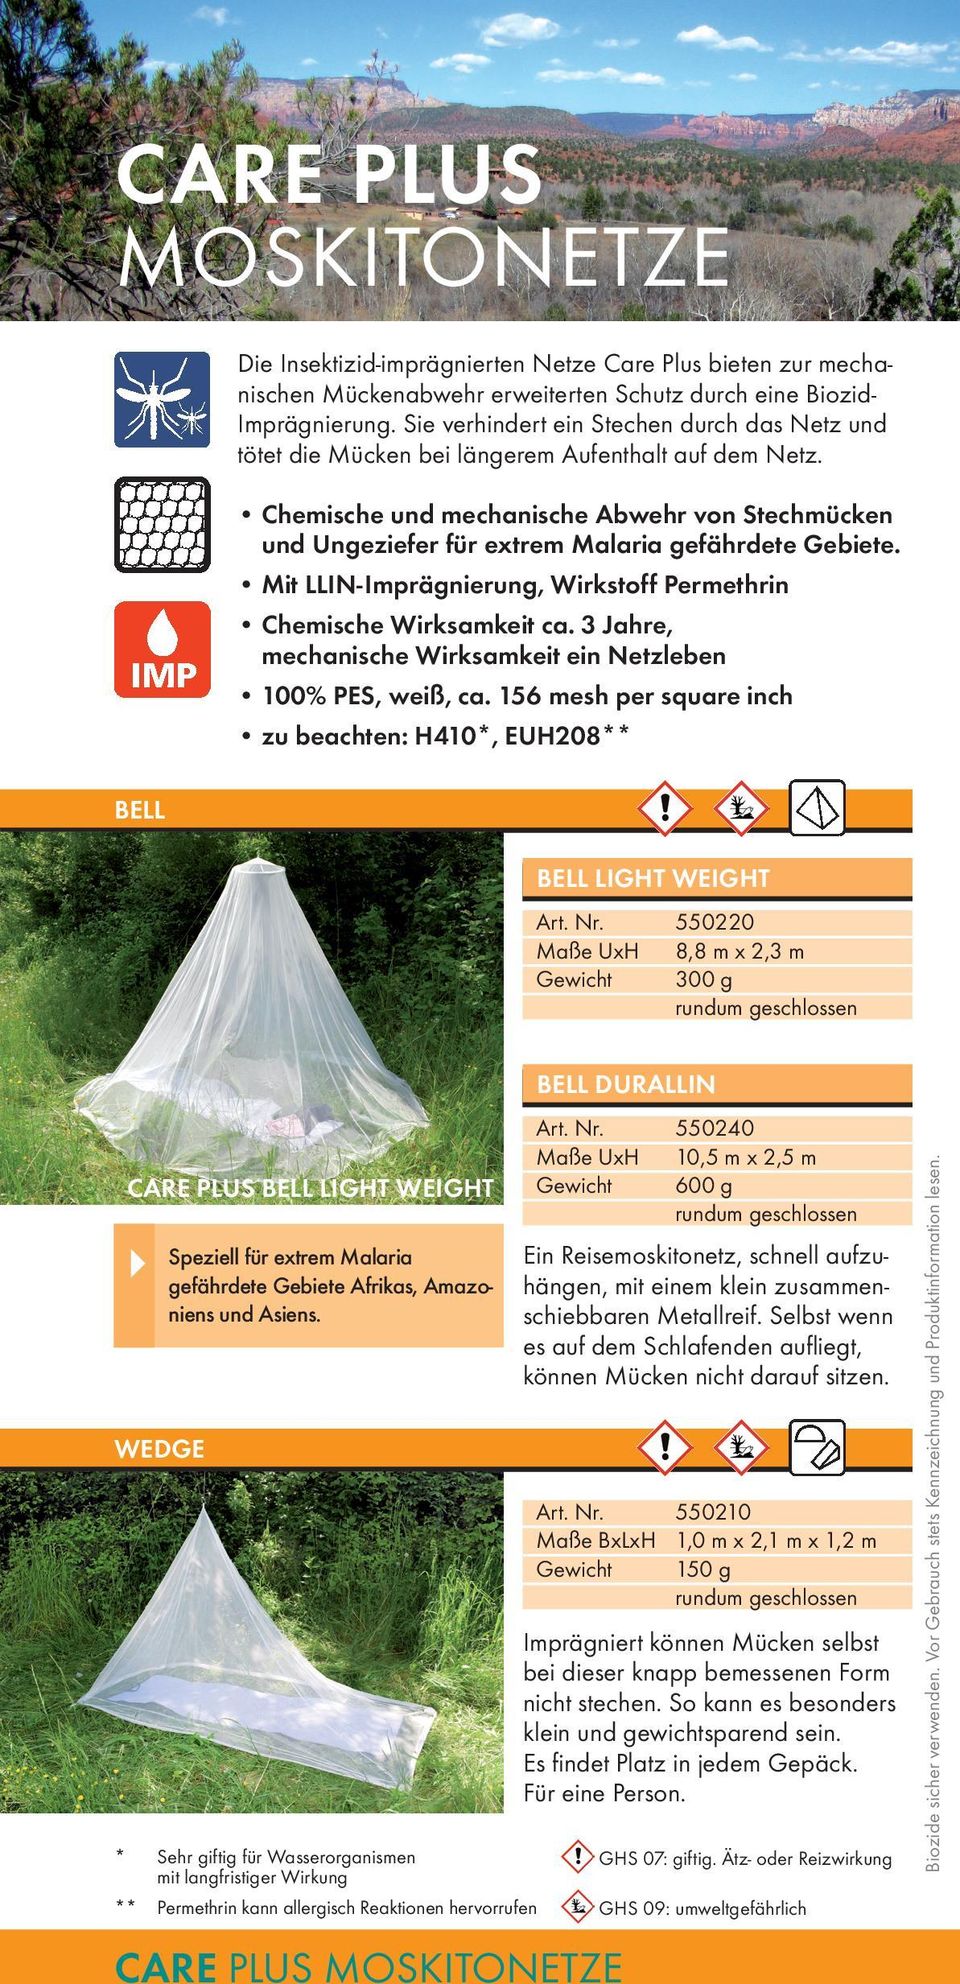 Chemische und mechanische Abwehr von Stechmücken und Ungeziefer für extrem Malaria gefährdete Gebiete. Mit LLIN-Imprägnierung, Wirkstoff Permethrin Chemische Wirksamkeit ca.